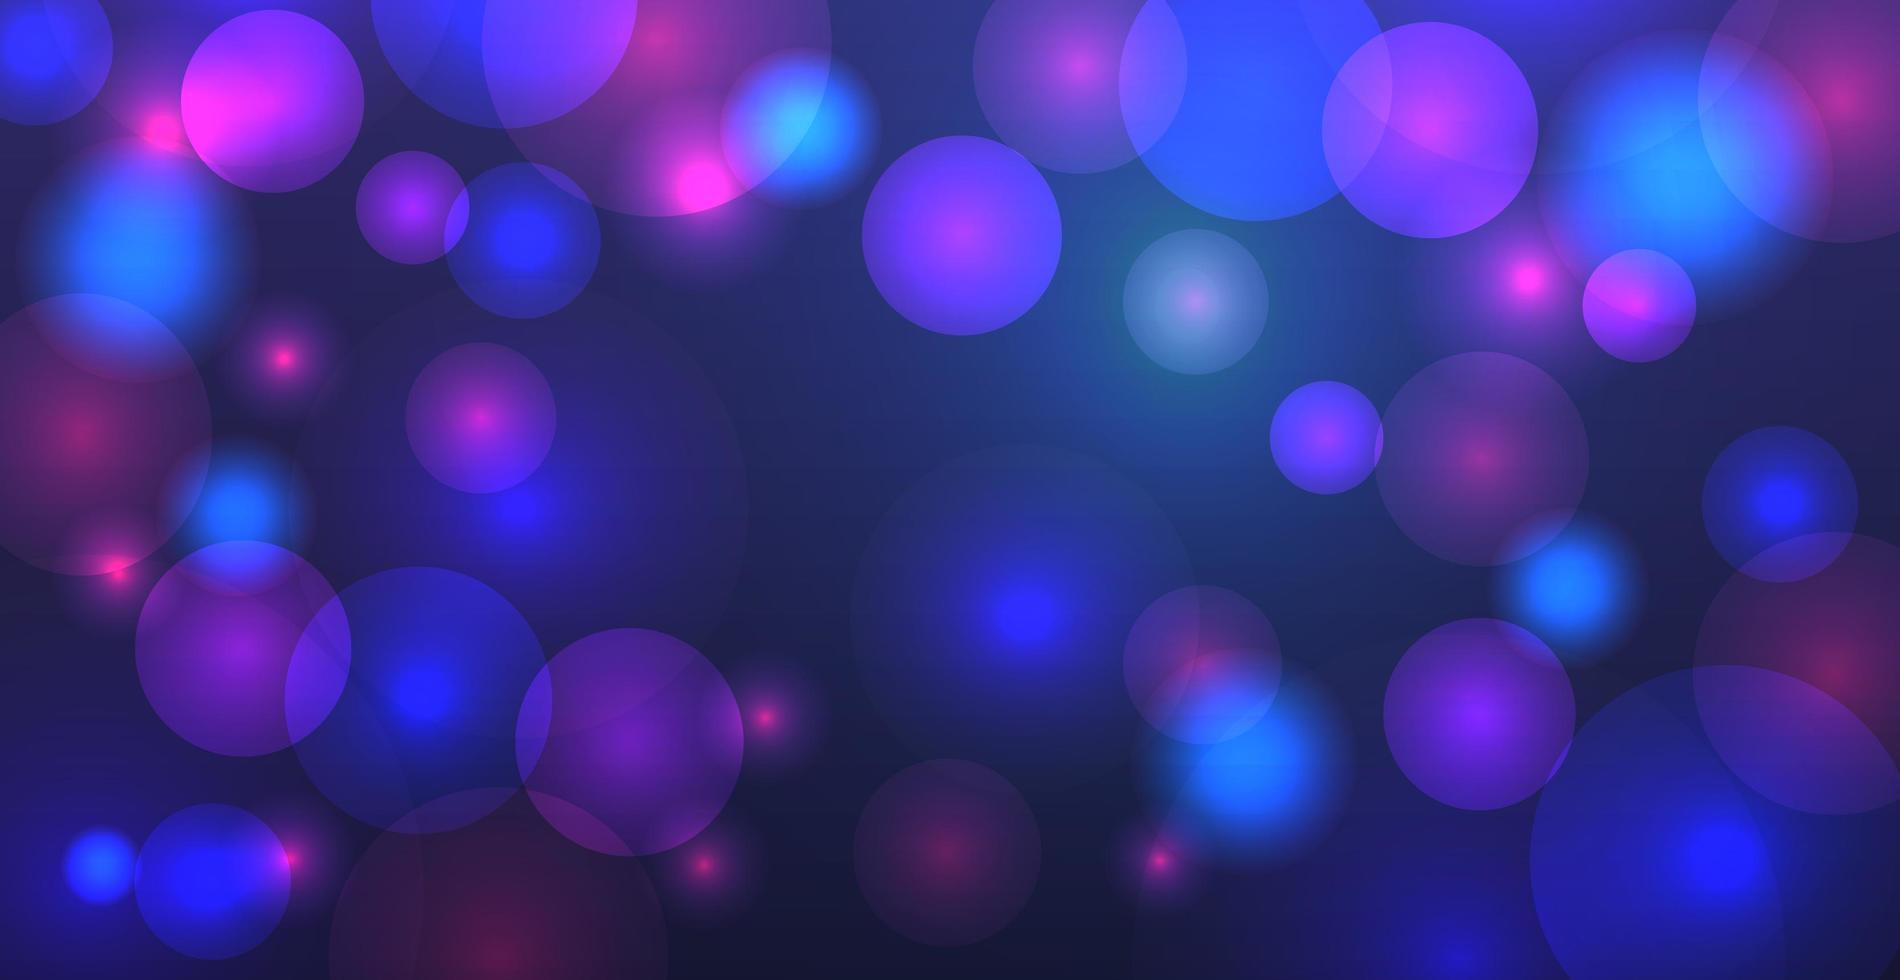 abstrait bleu bokeh avec des cercles défocalisés et des paillettes. élément de décoration pour les vacances de noël et du nouvel an, cartes de voeux, bannières web, affiches - image vectorielle vecteur